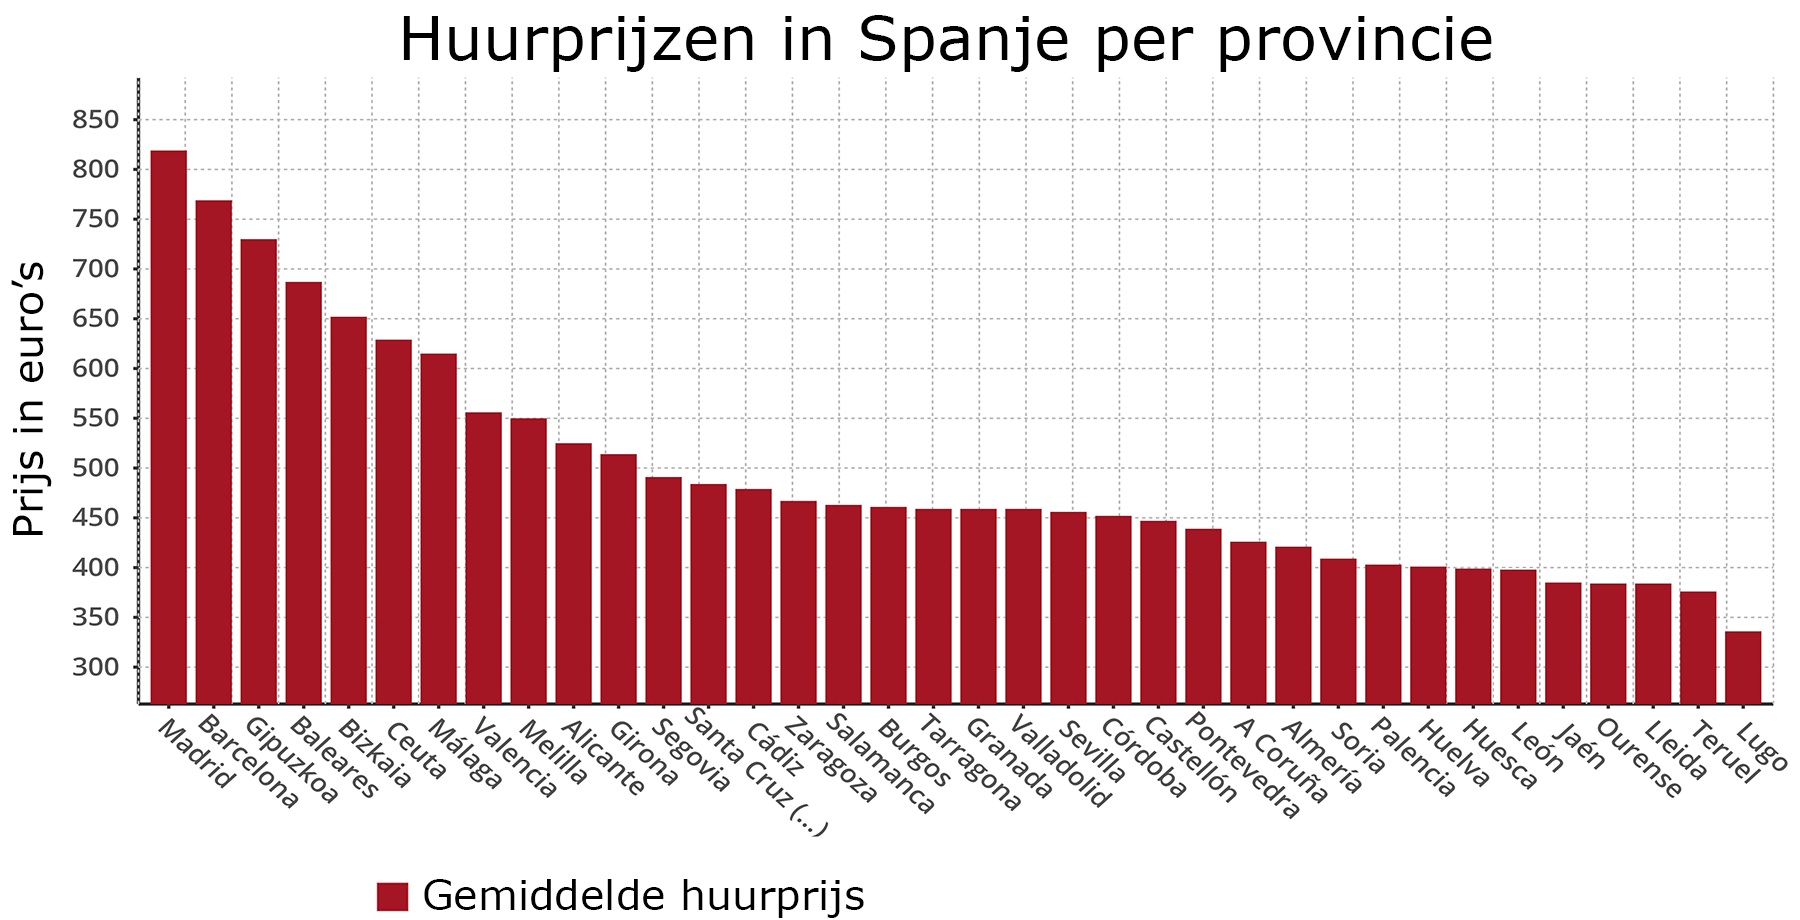 Huurprijzen in Spanje per provincie